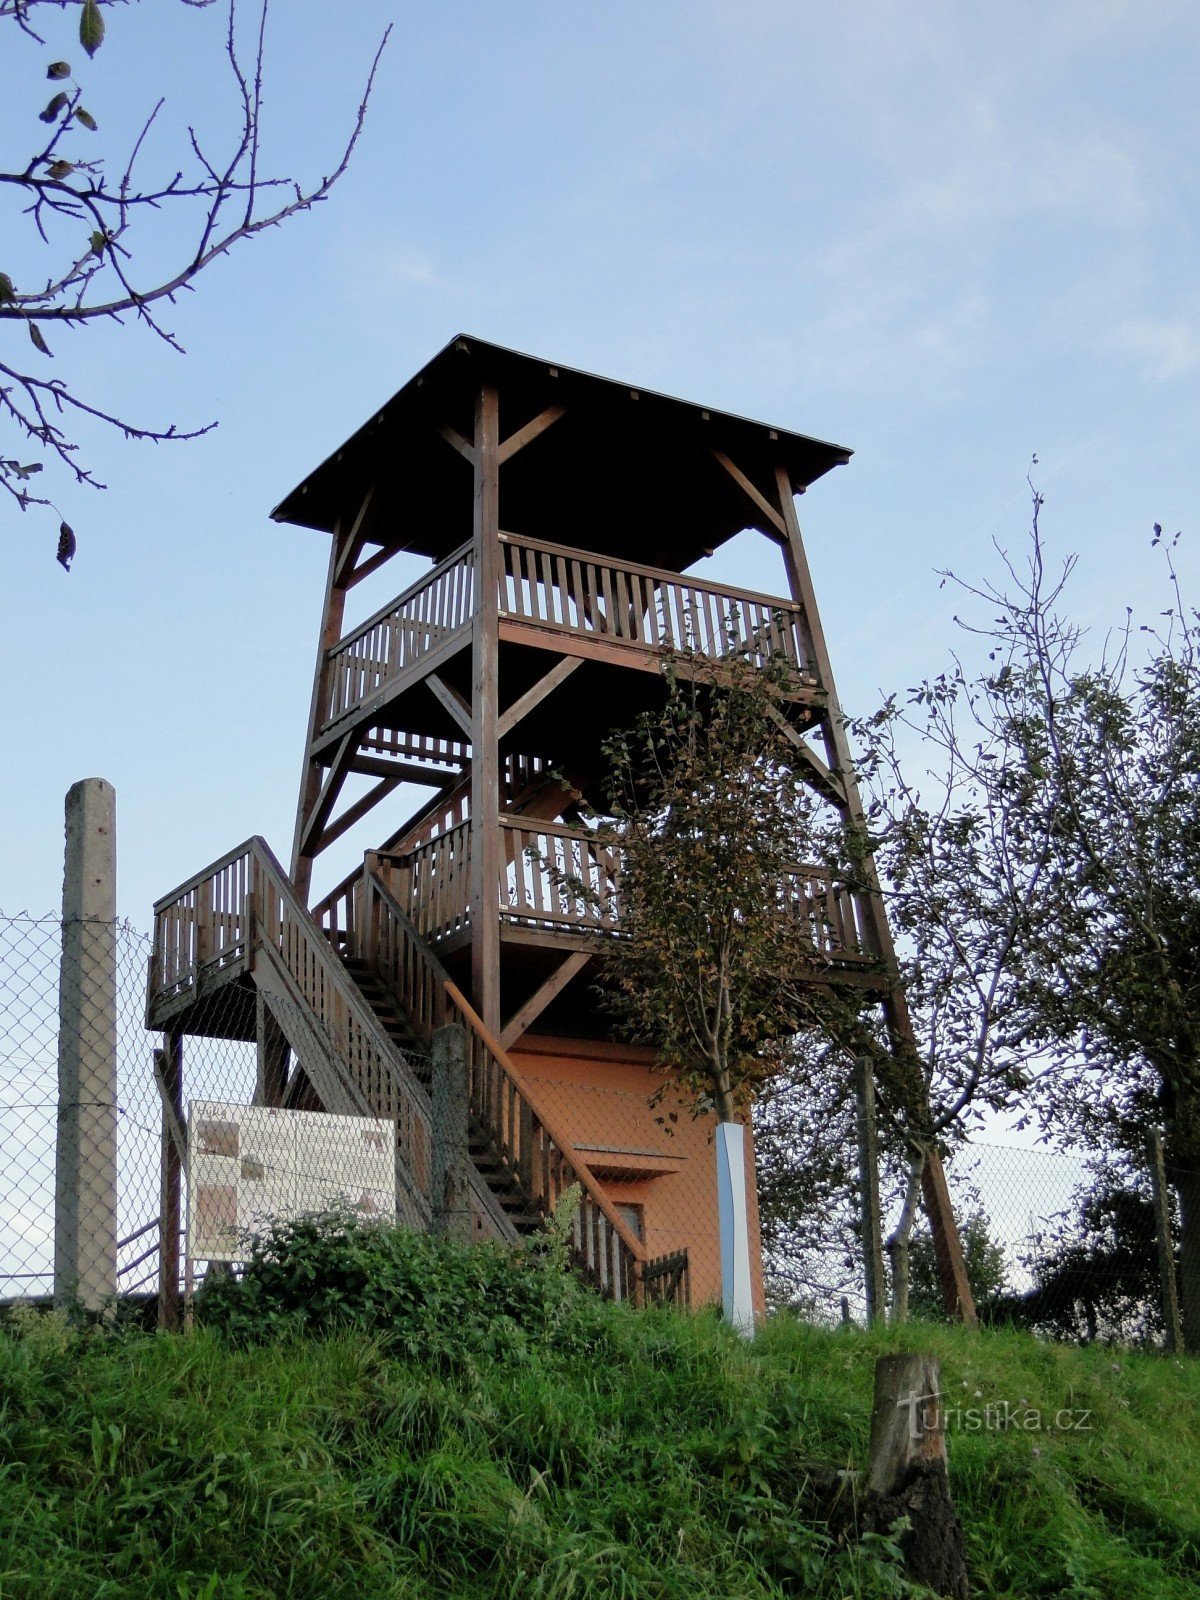 Torre de vigia Johanka na aldeia de Hýsly